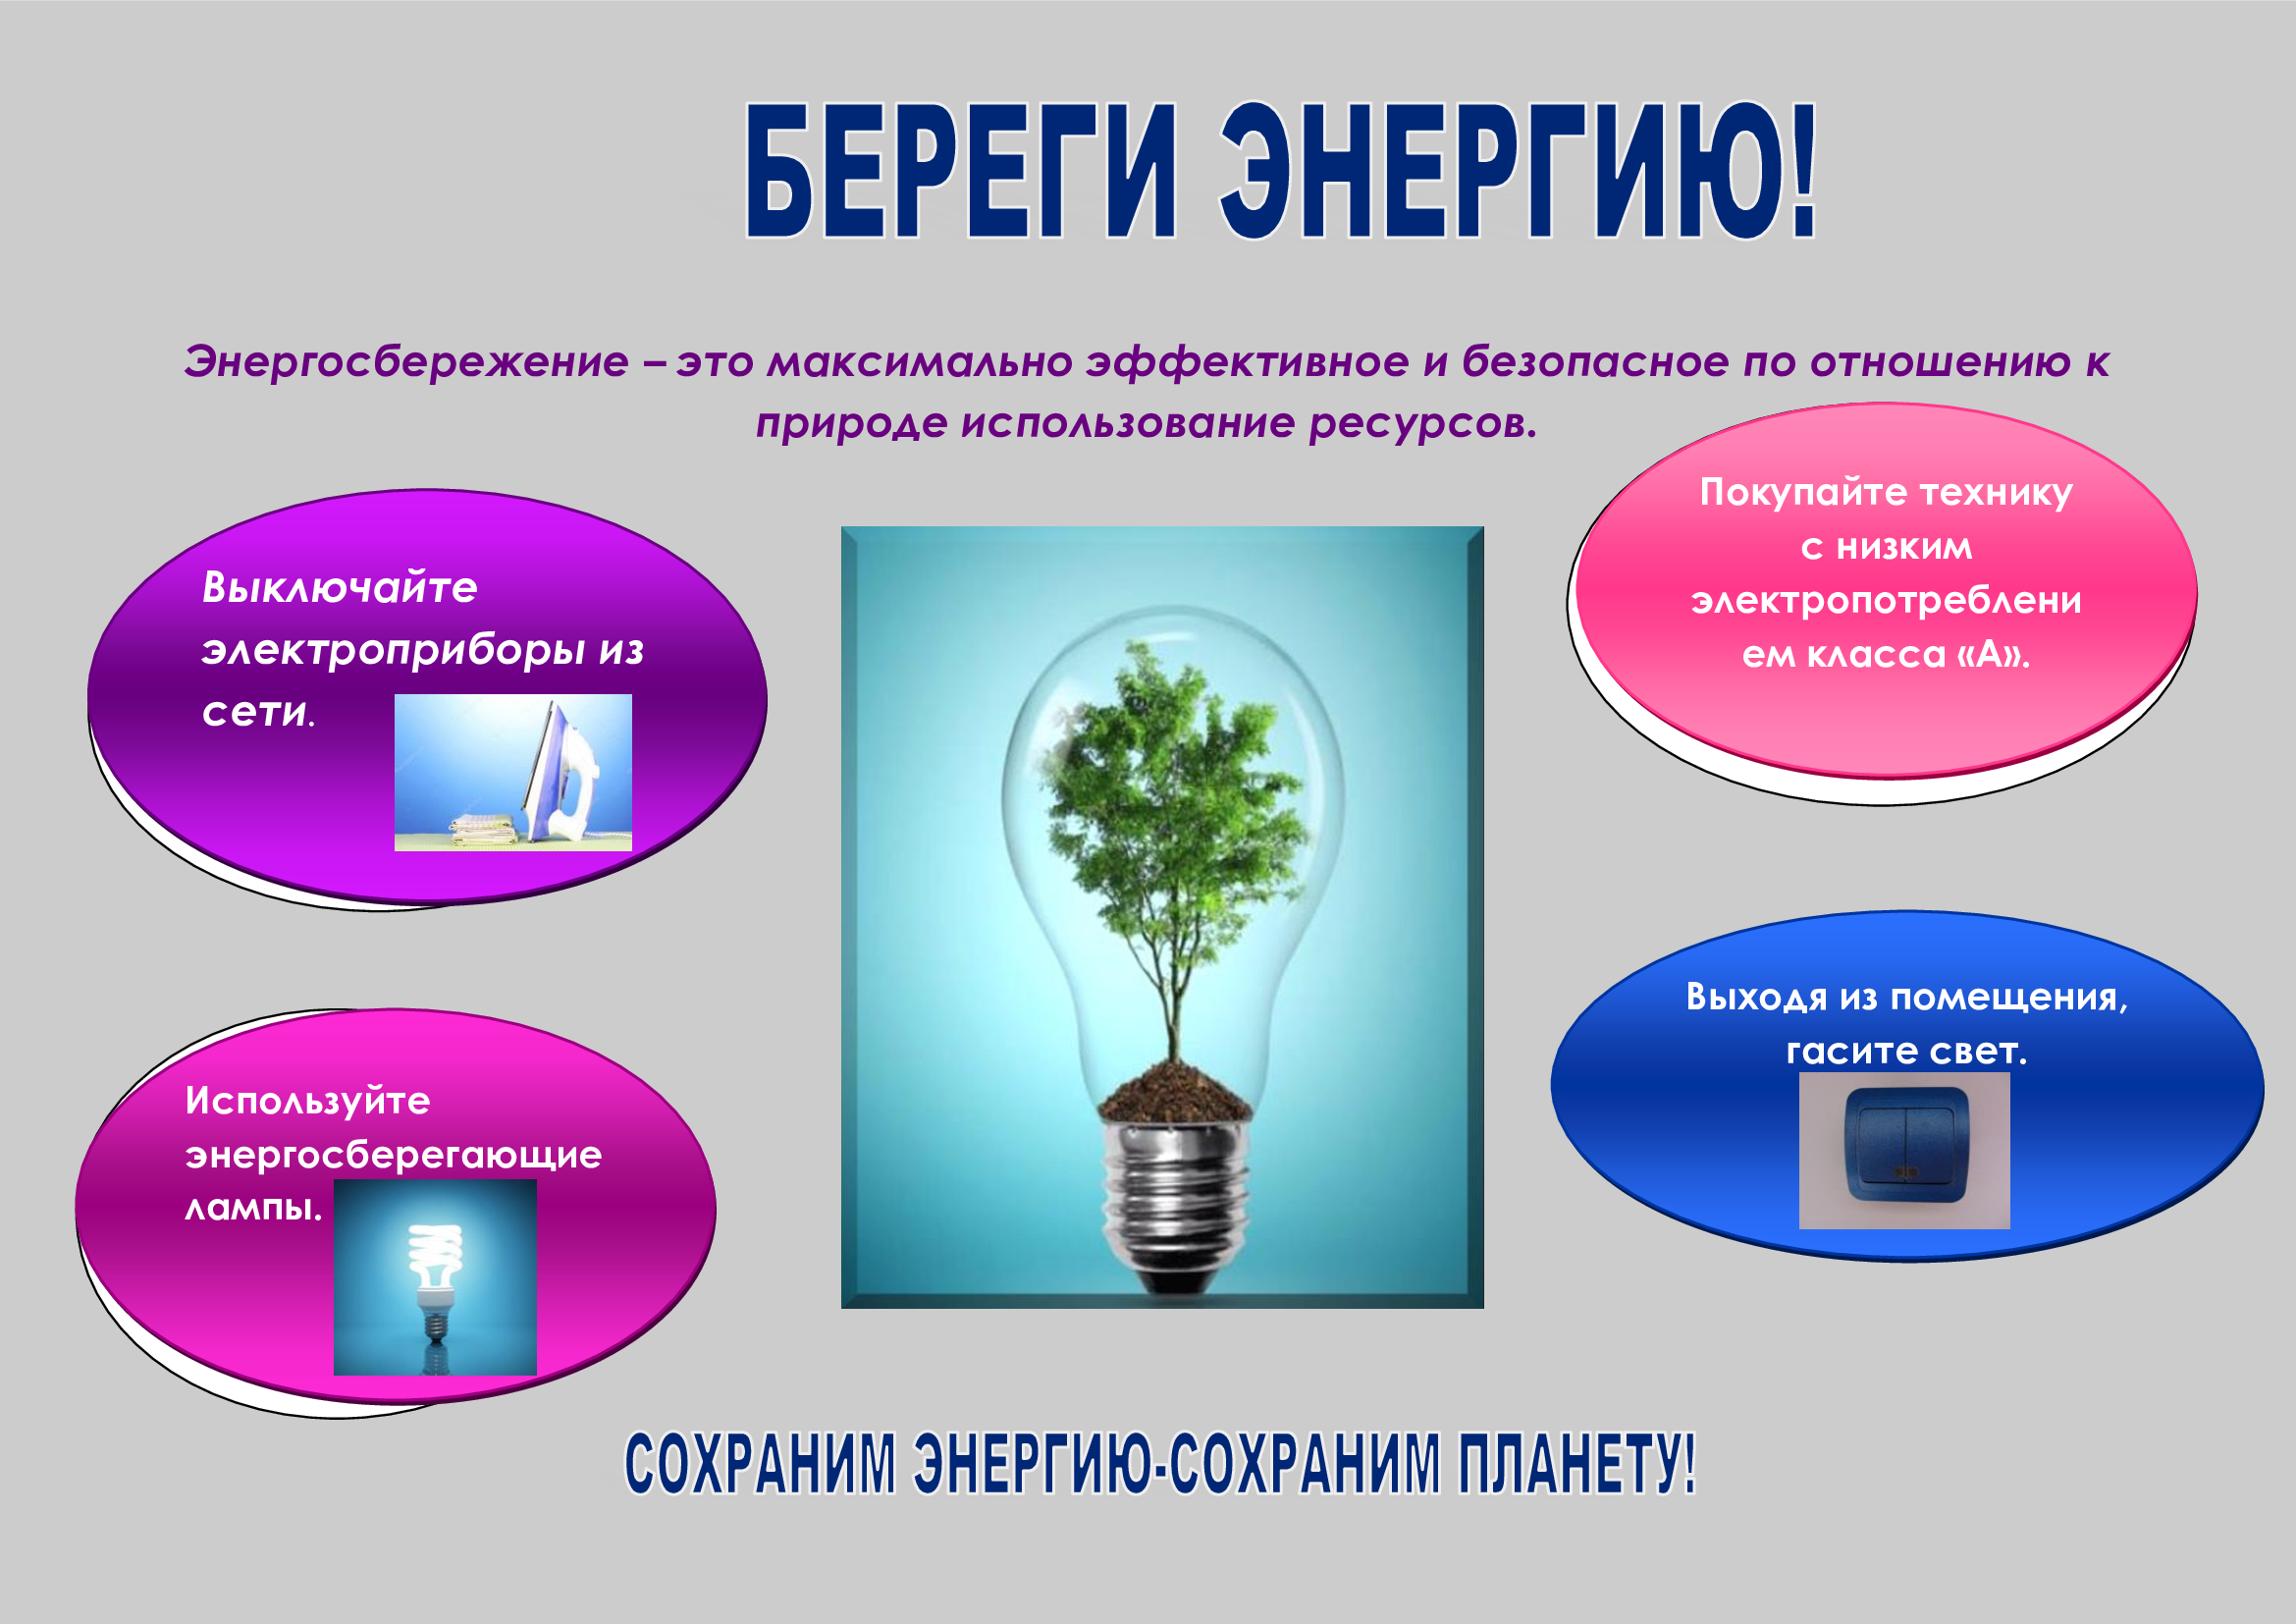 Социальная реклама в области энергосбережения и повышения энергетической эффективности.